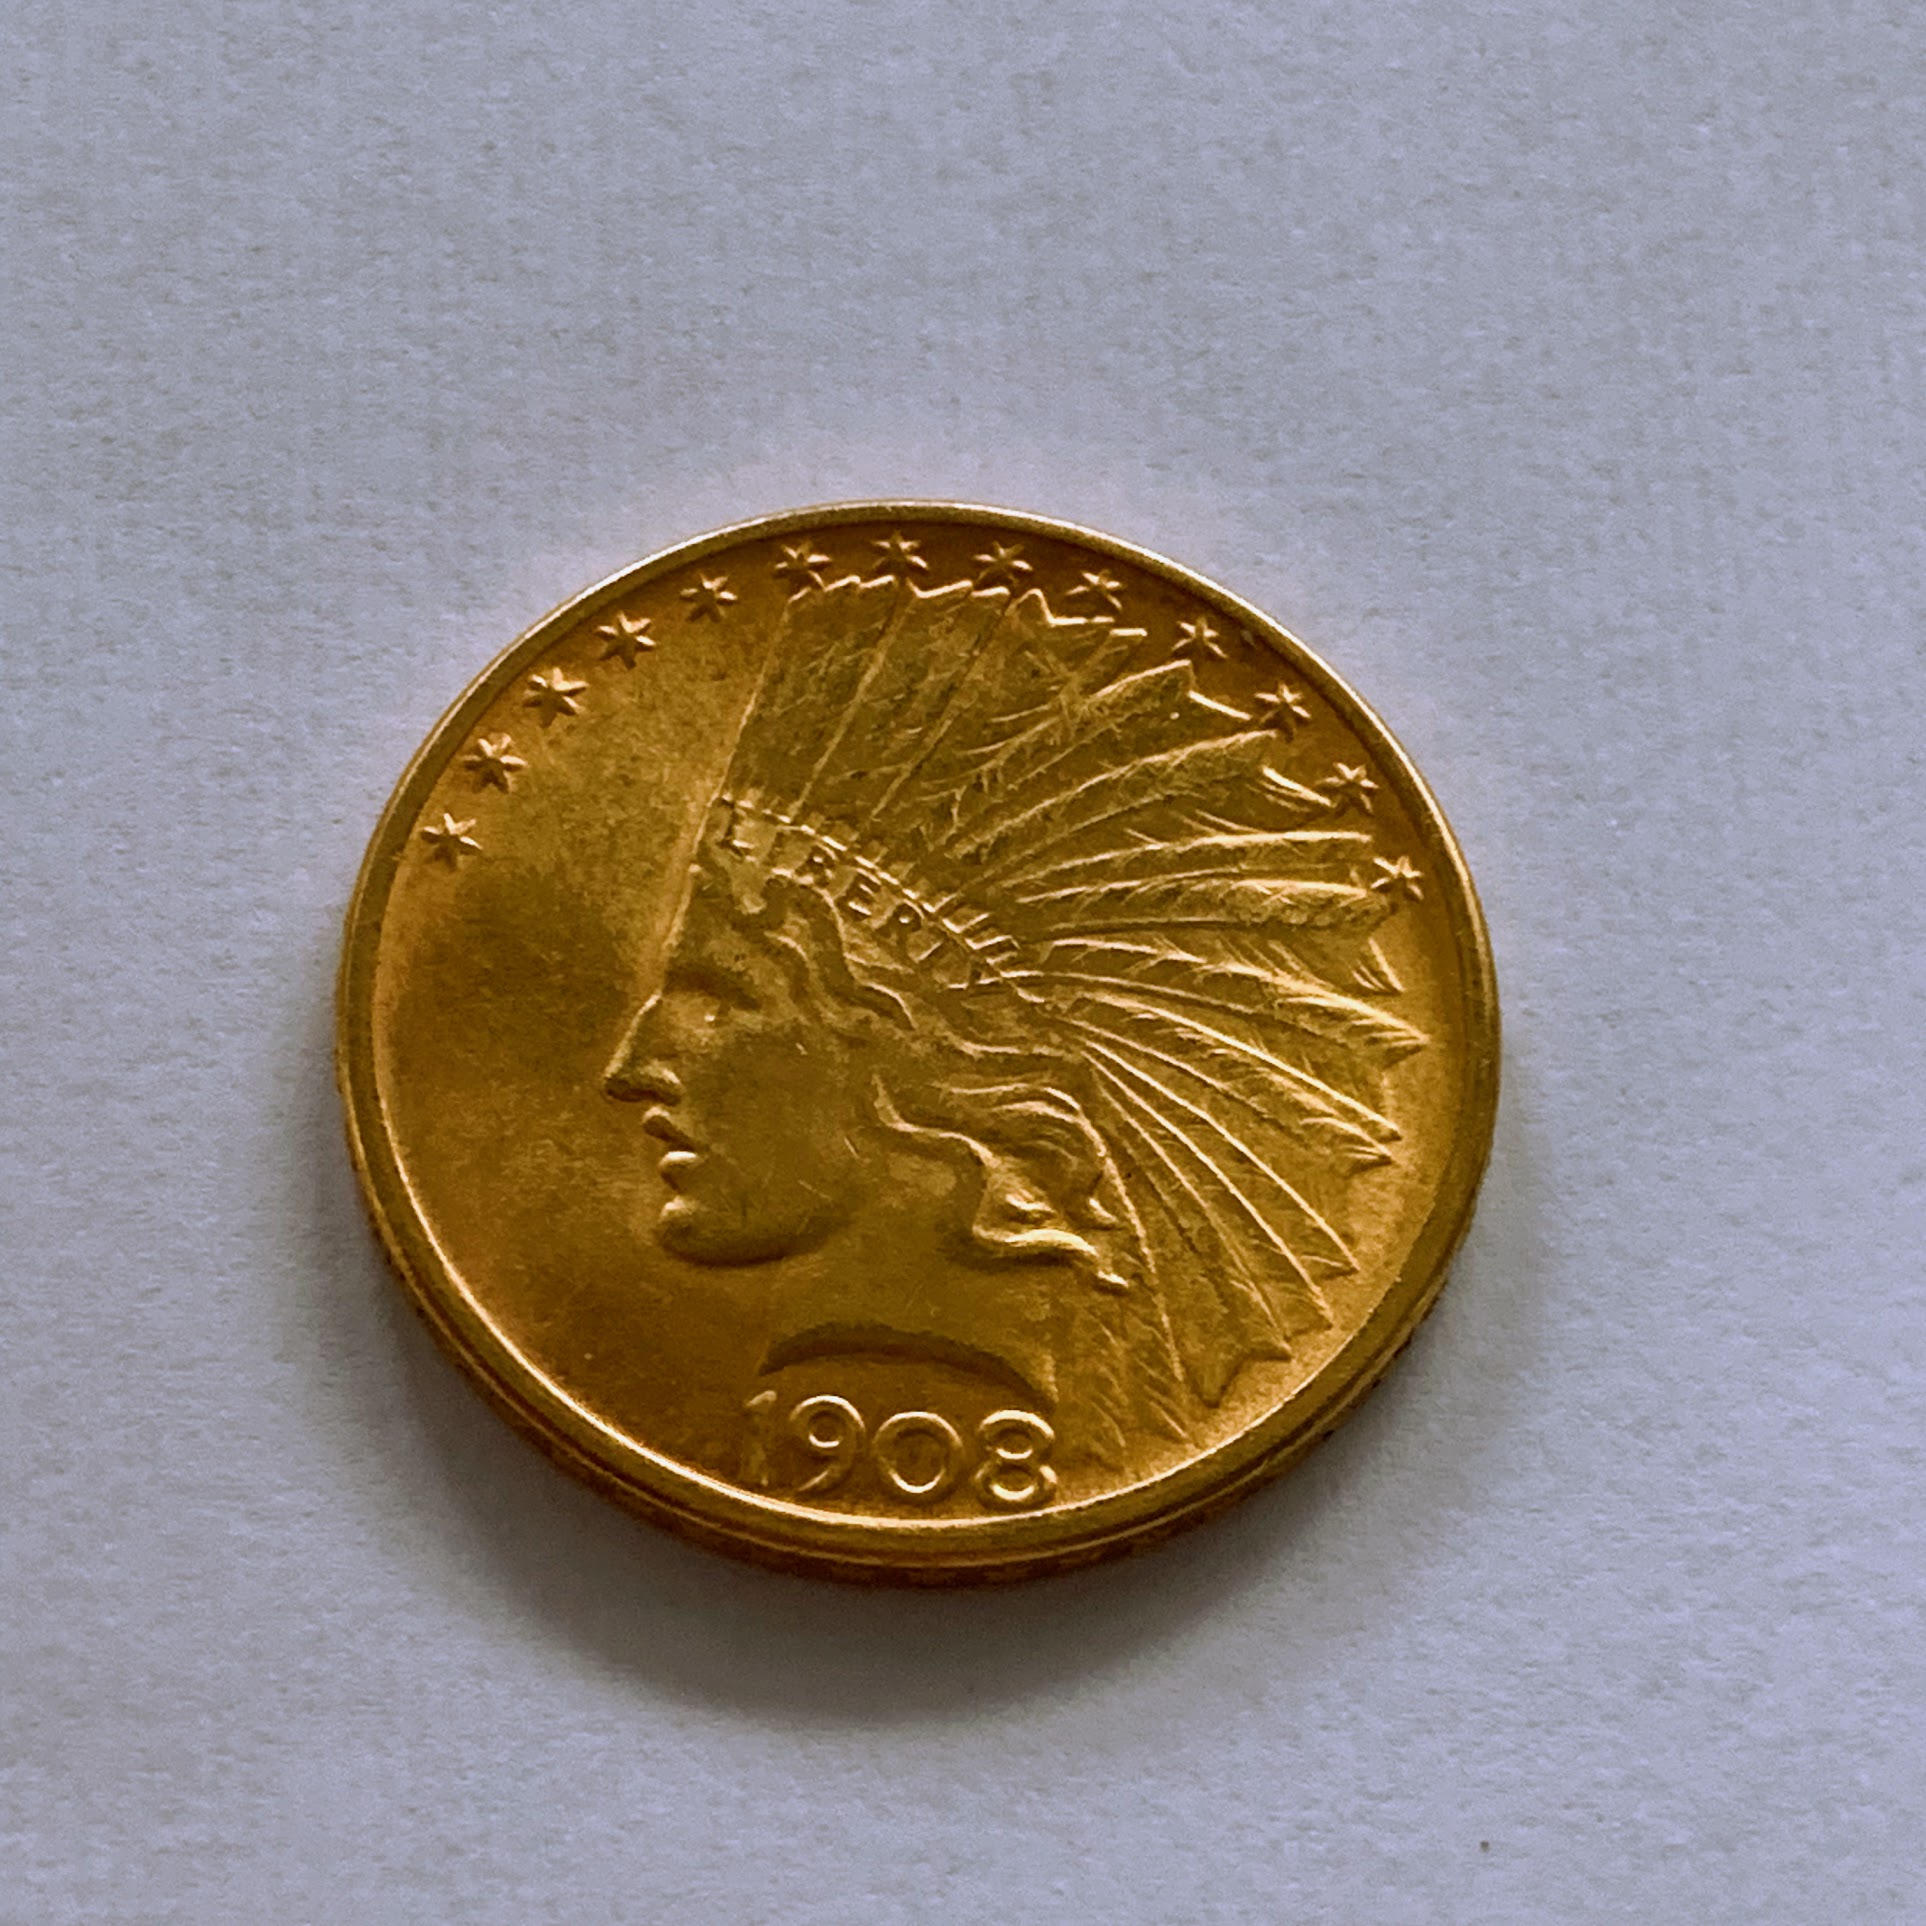 10 Dollars 1908 Indian Head